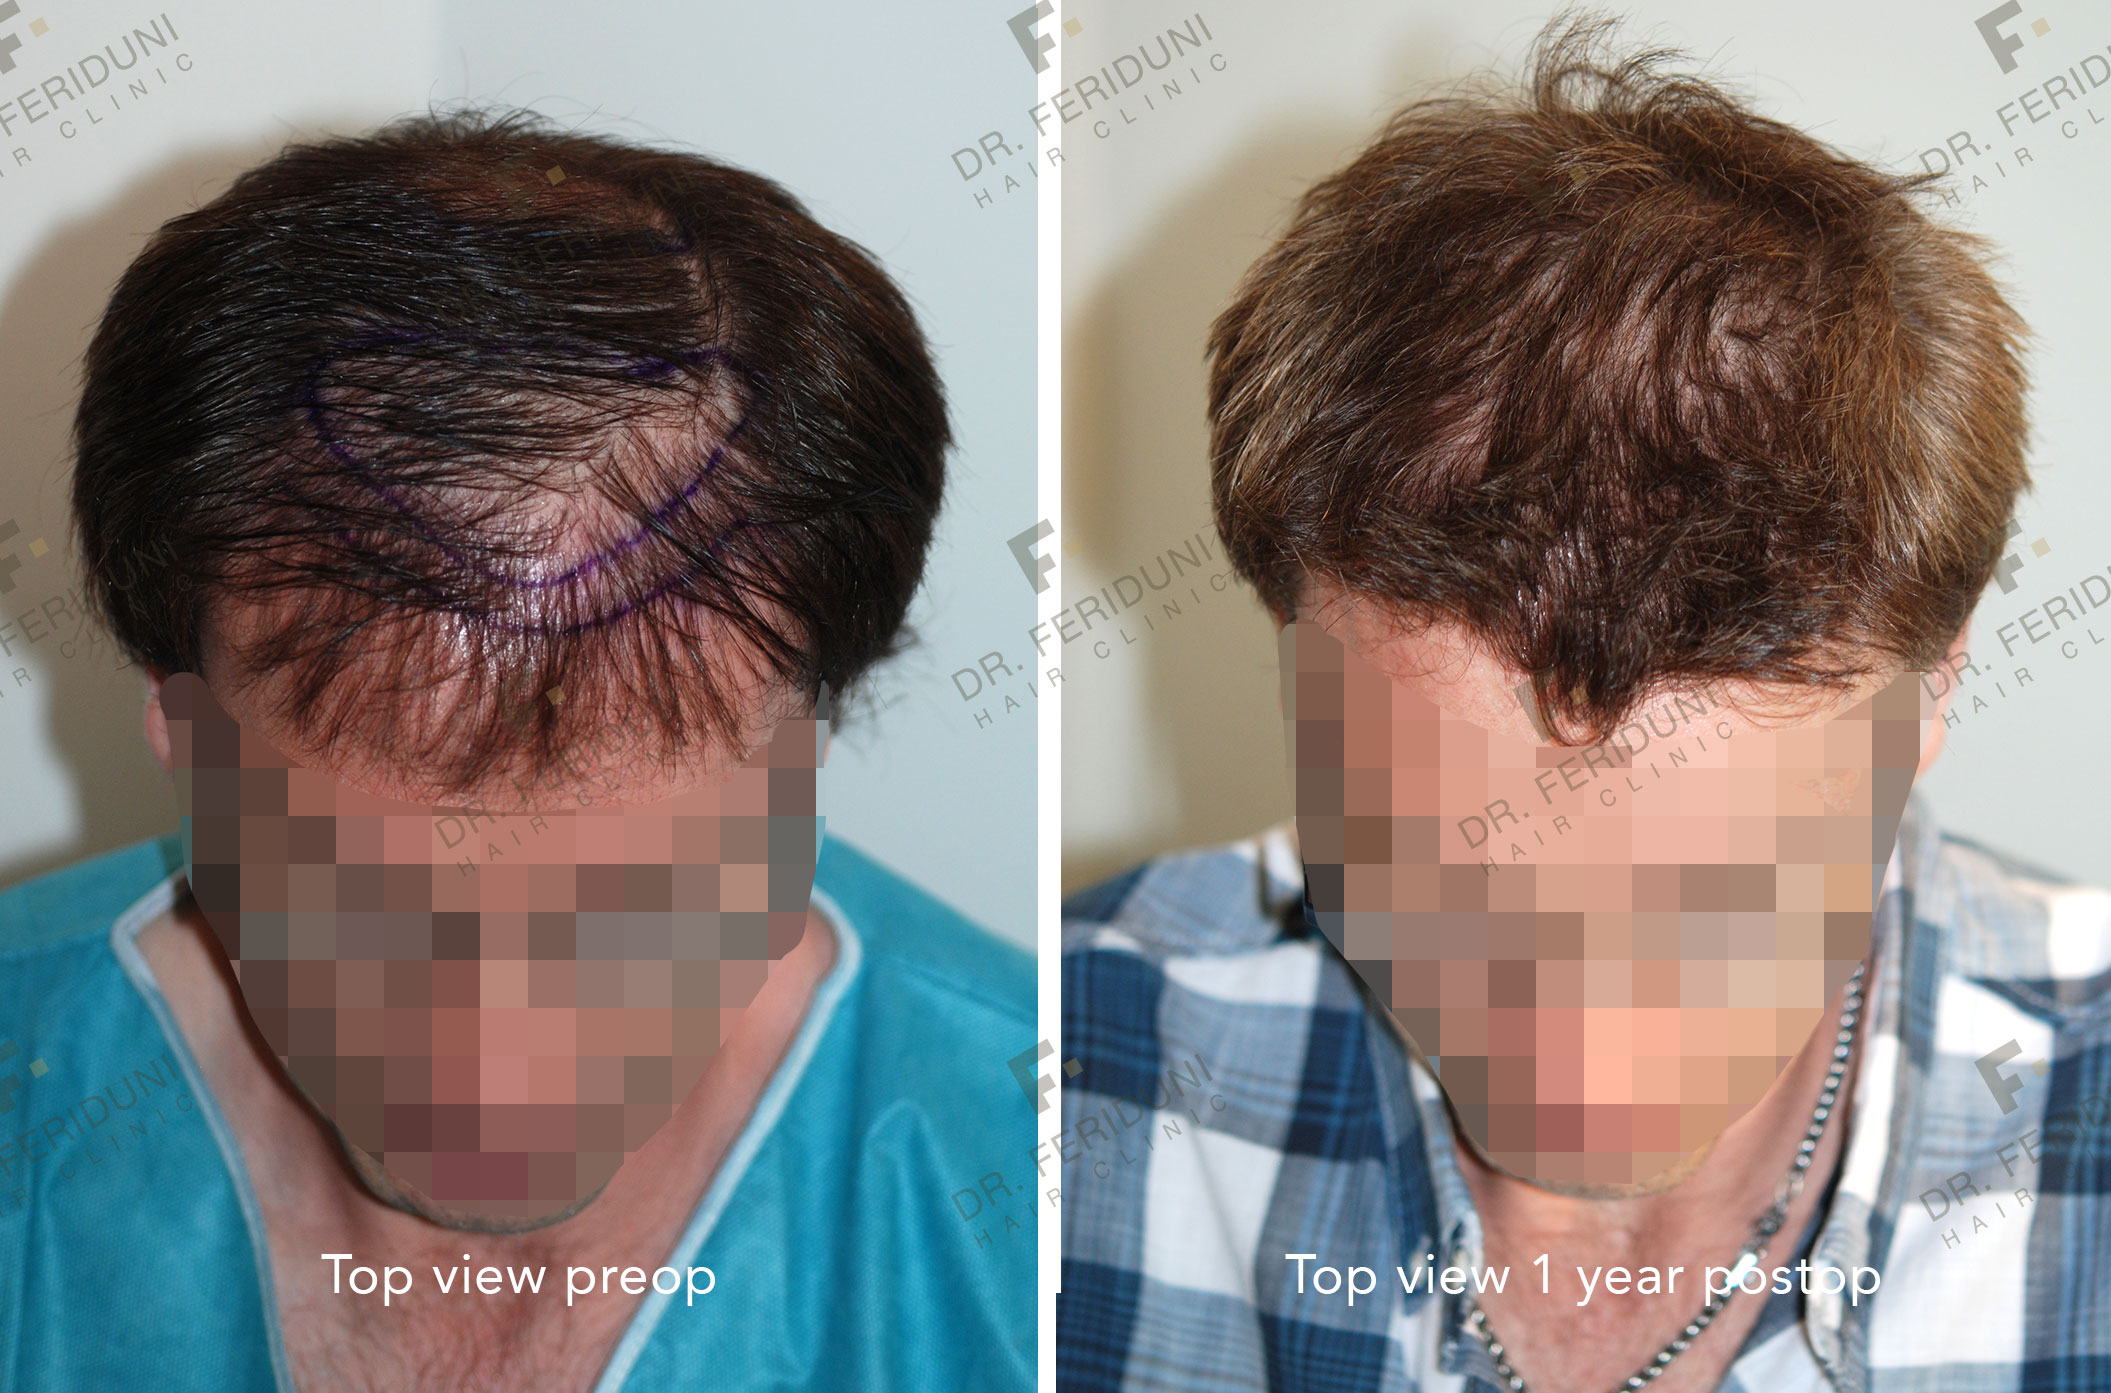 GK2 Hair Transplantation - Dr. Feriduni